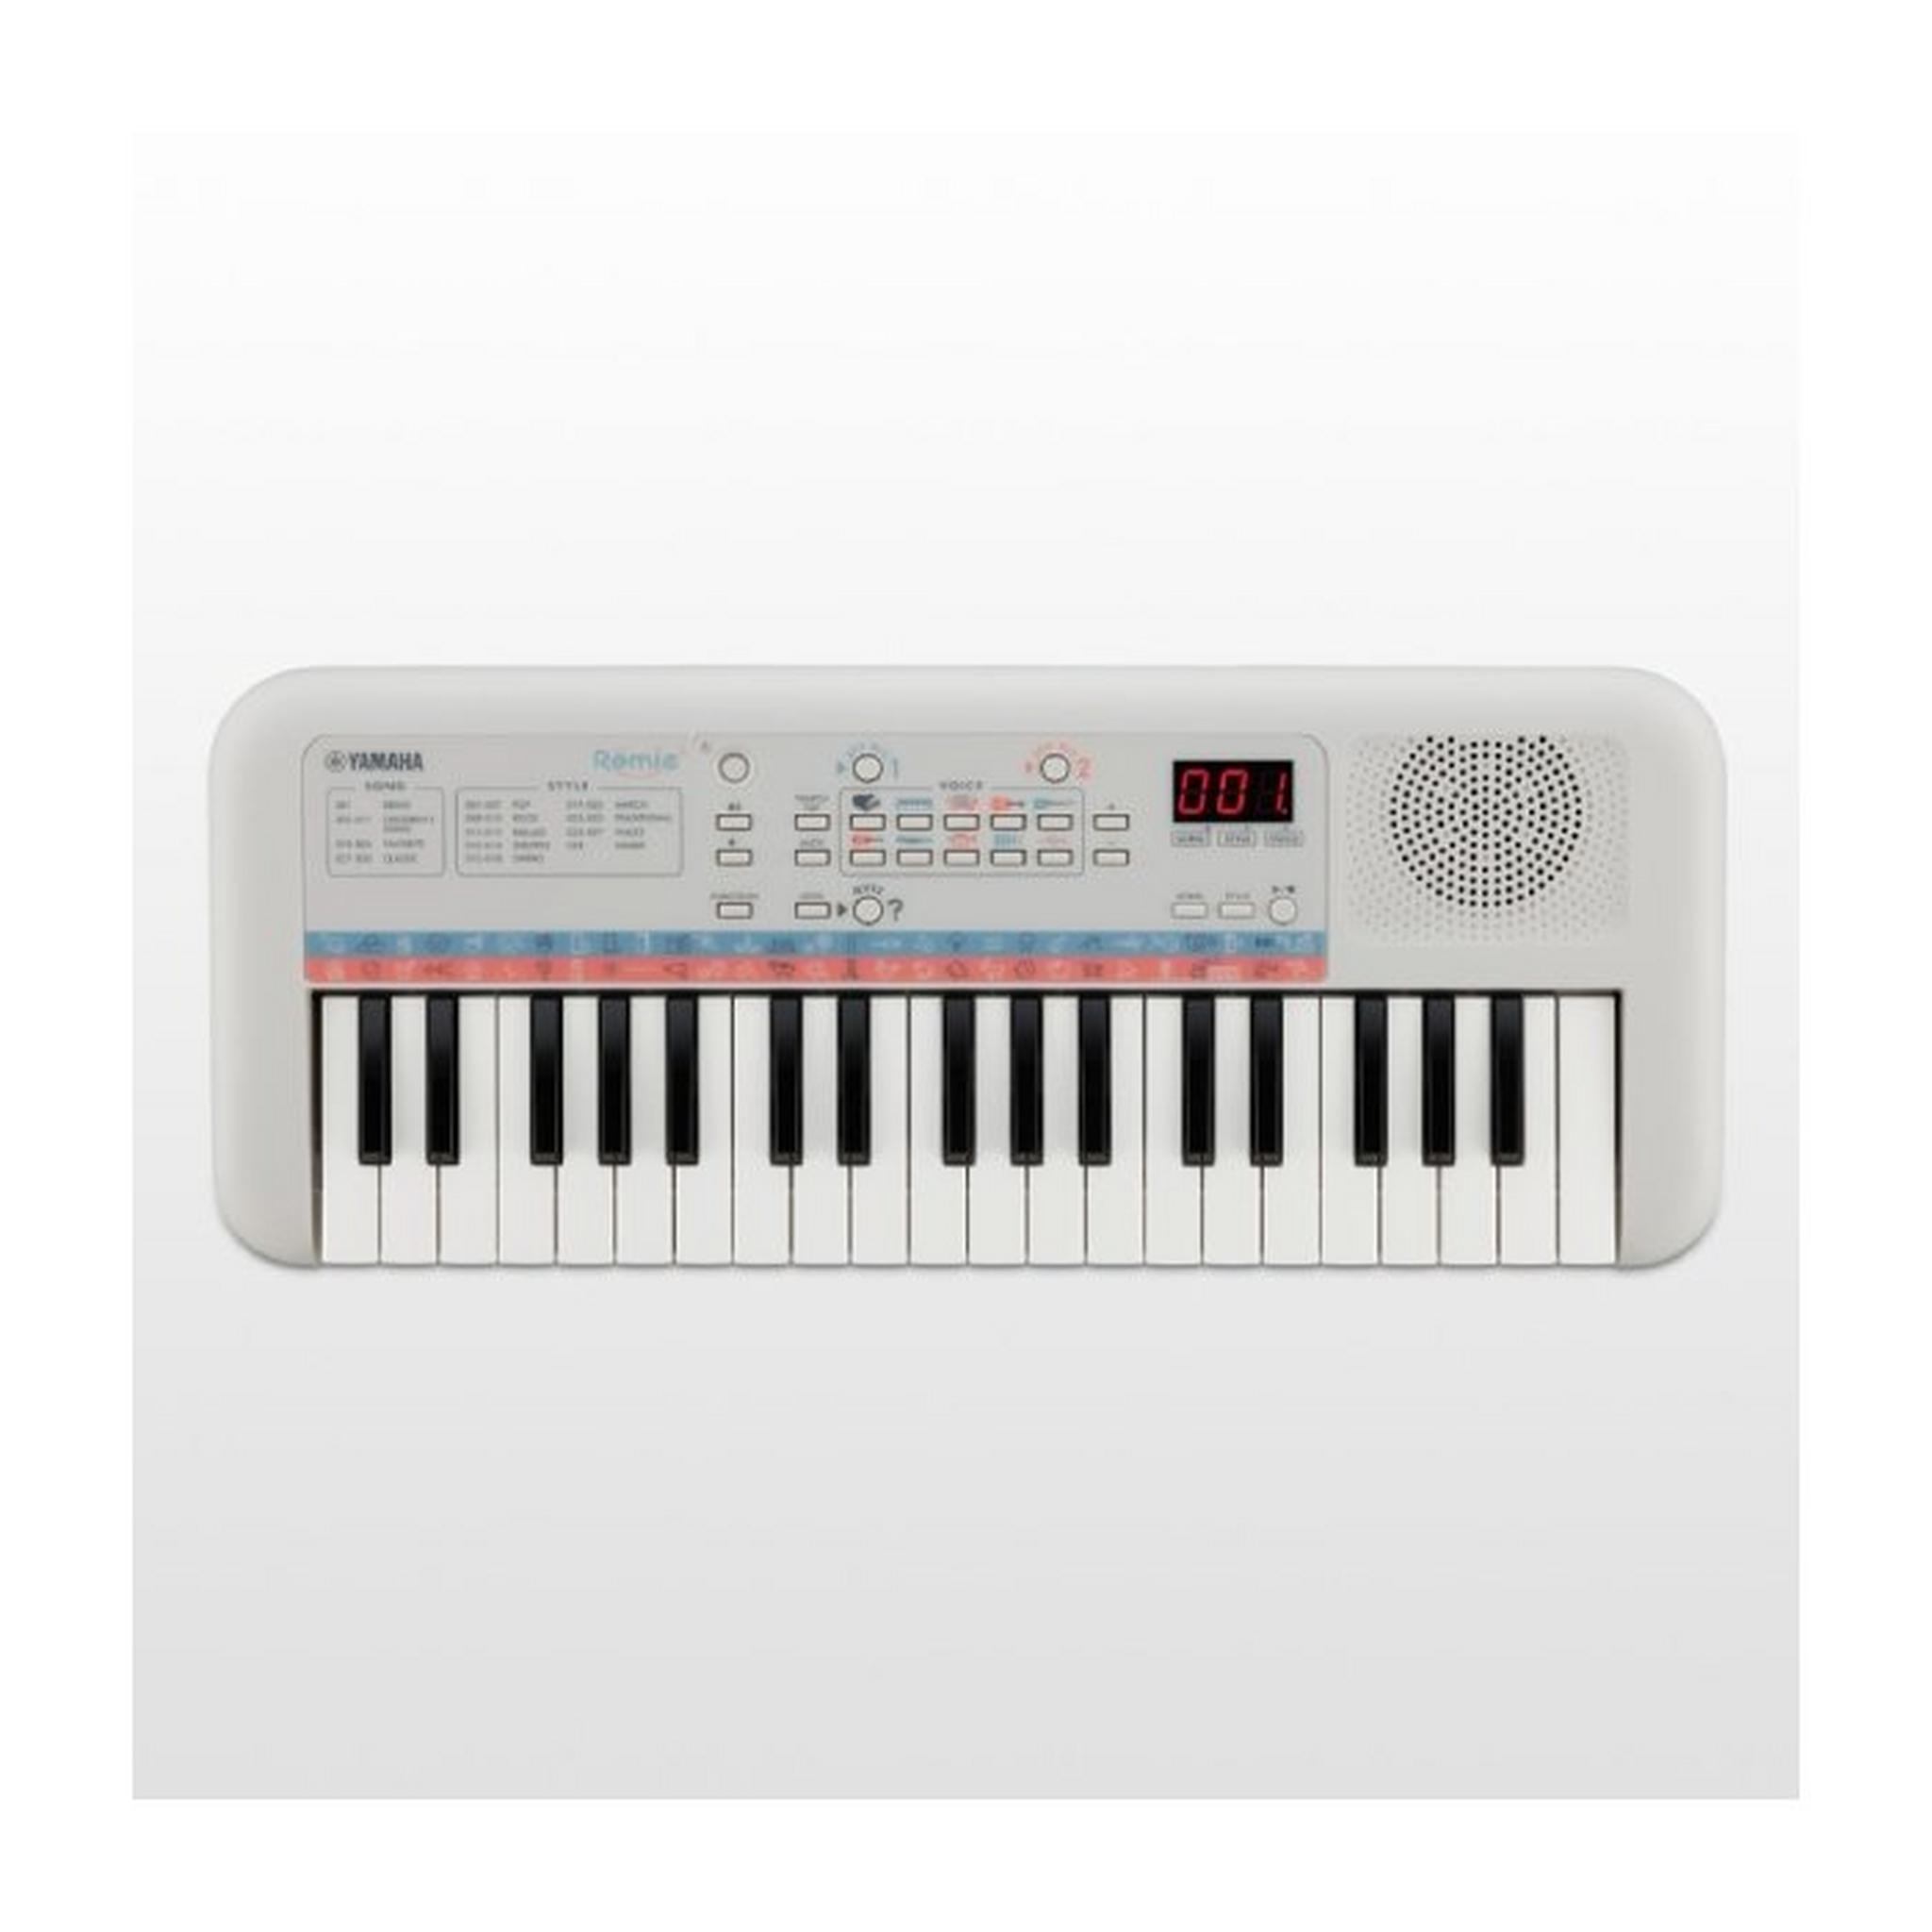 لوحة مفاتيح موسيقية صغيرة رقمية - 37 مفتاح من ياماها - PSS-E30